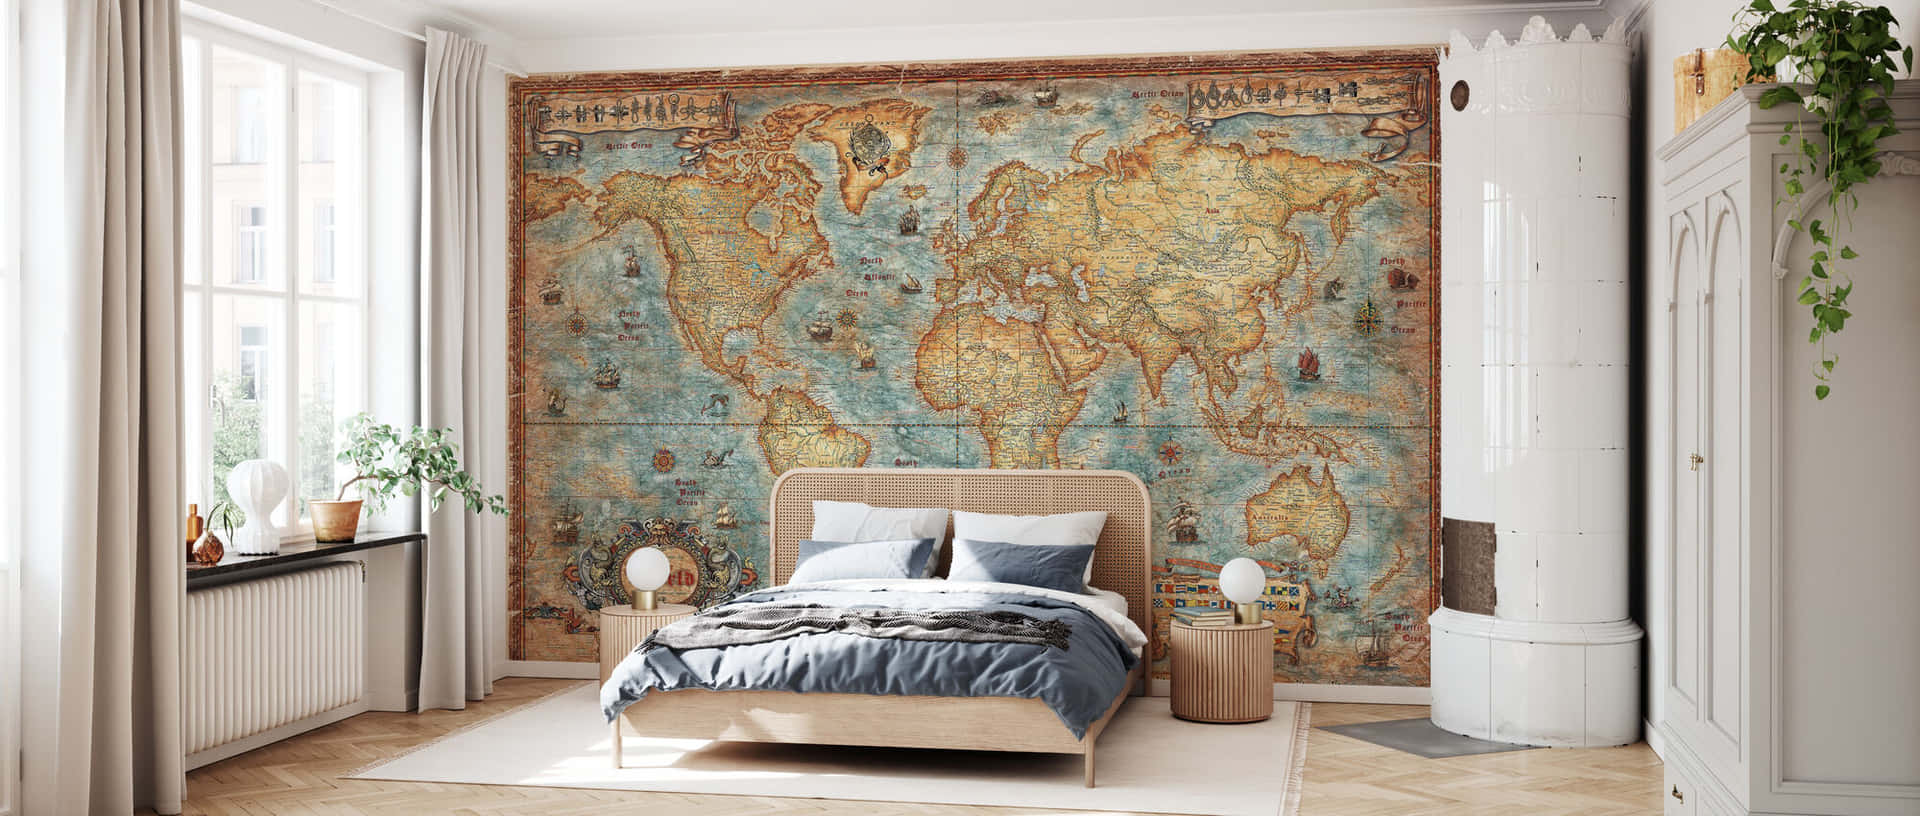 Vintage World Map Bedroom Interior Wallpaper